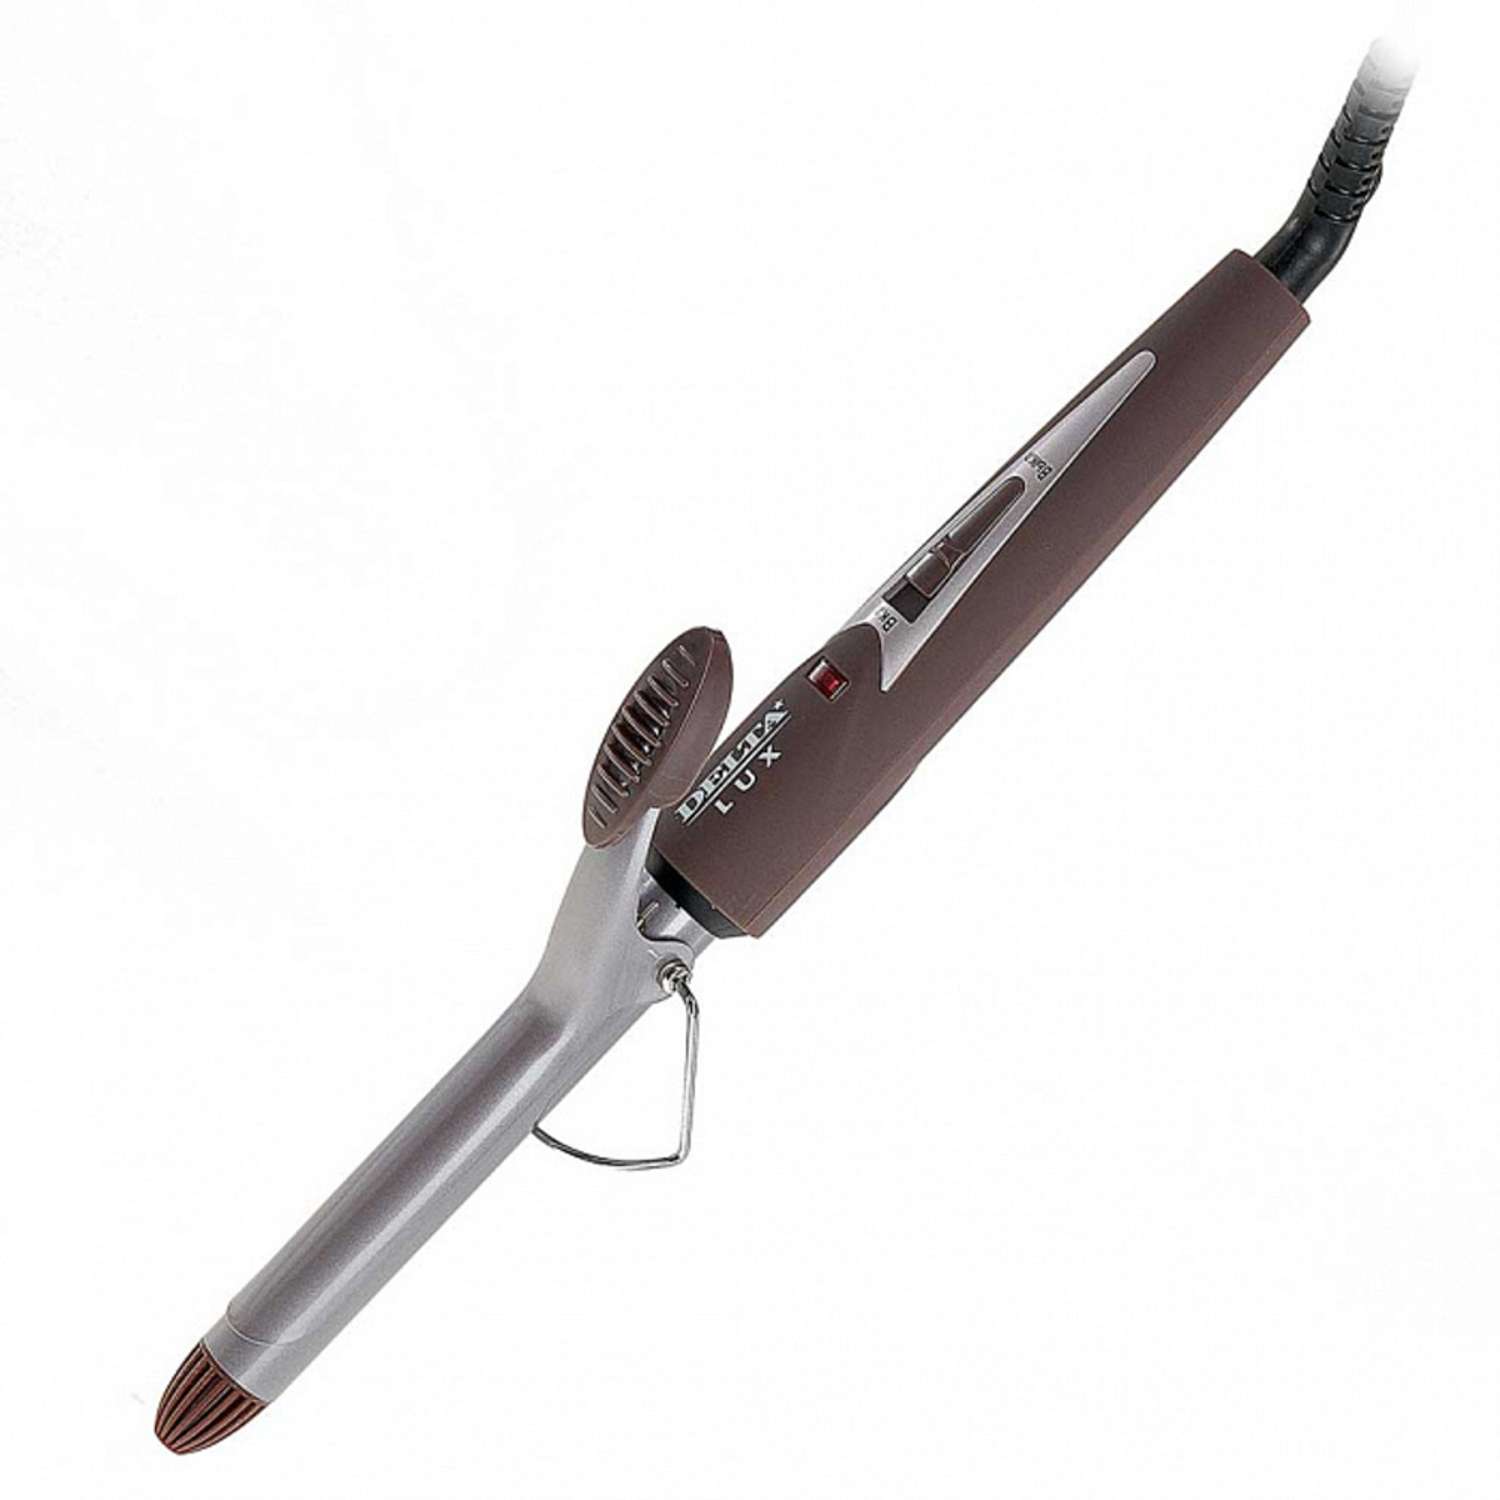 Стайлер для завивки волос Delta Lux DL-0630 коричневый керамическое покрытие d 19 мм 25 Вт - фото 3